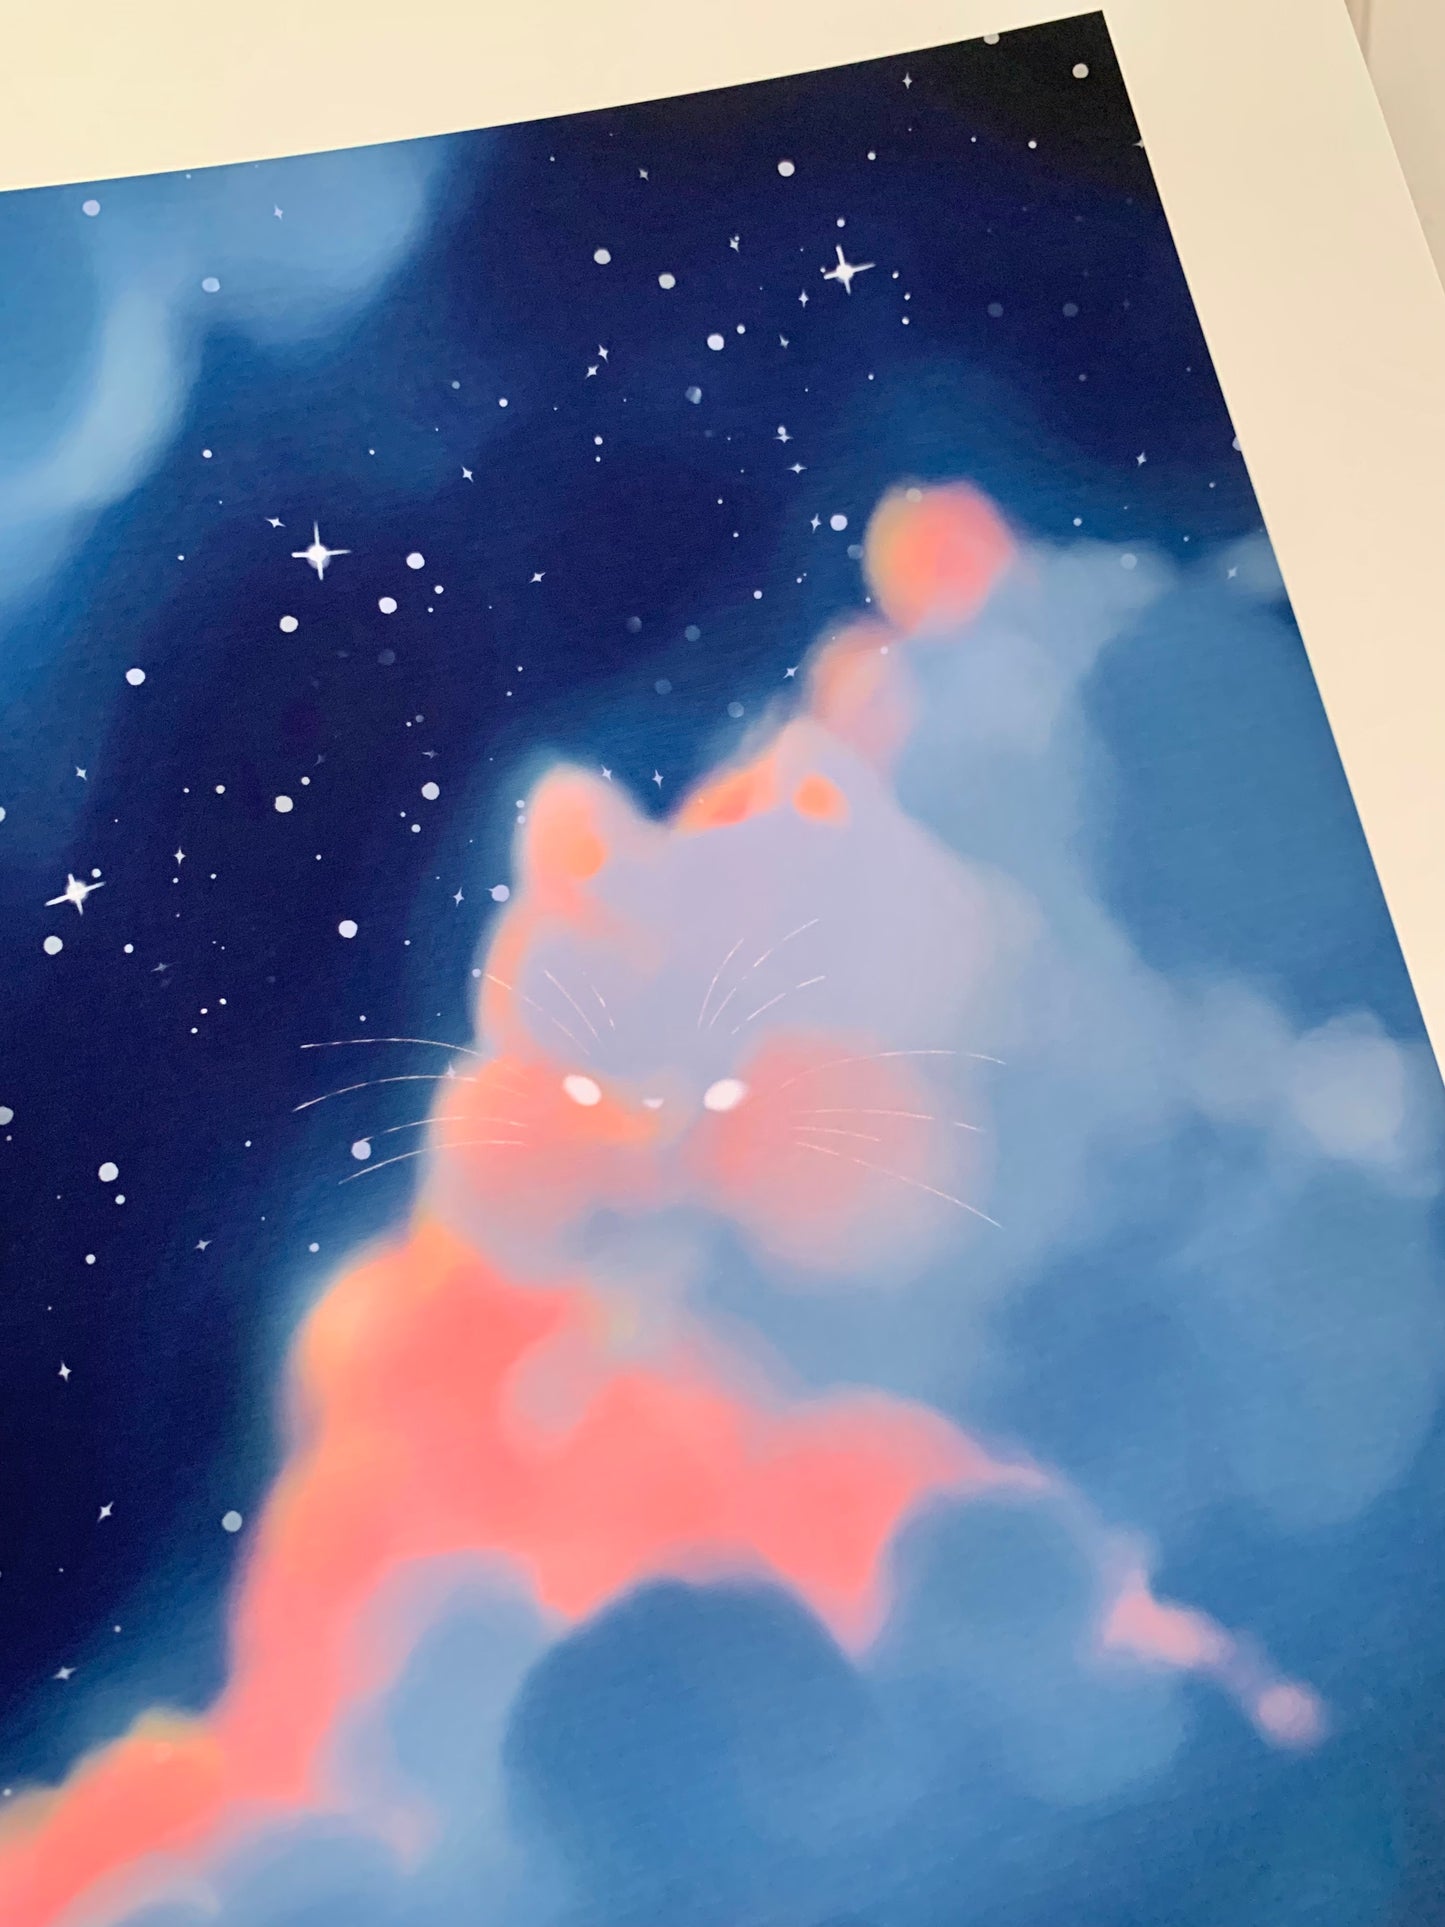 The Cat in the Clouds Art Print